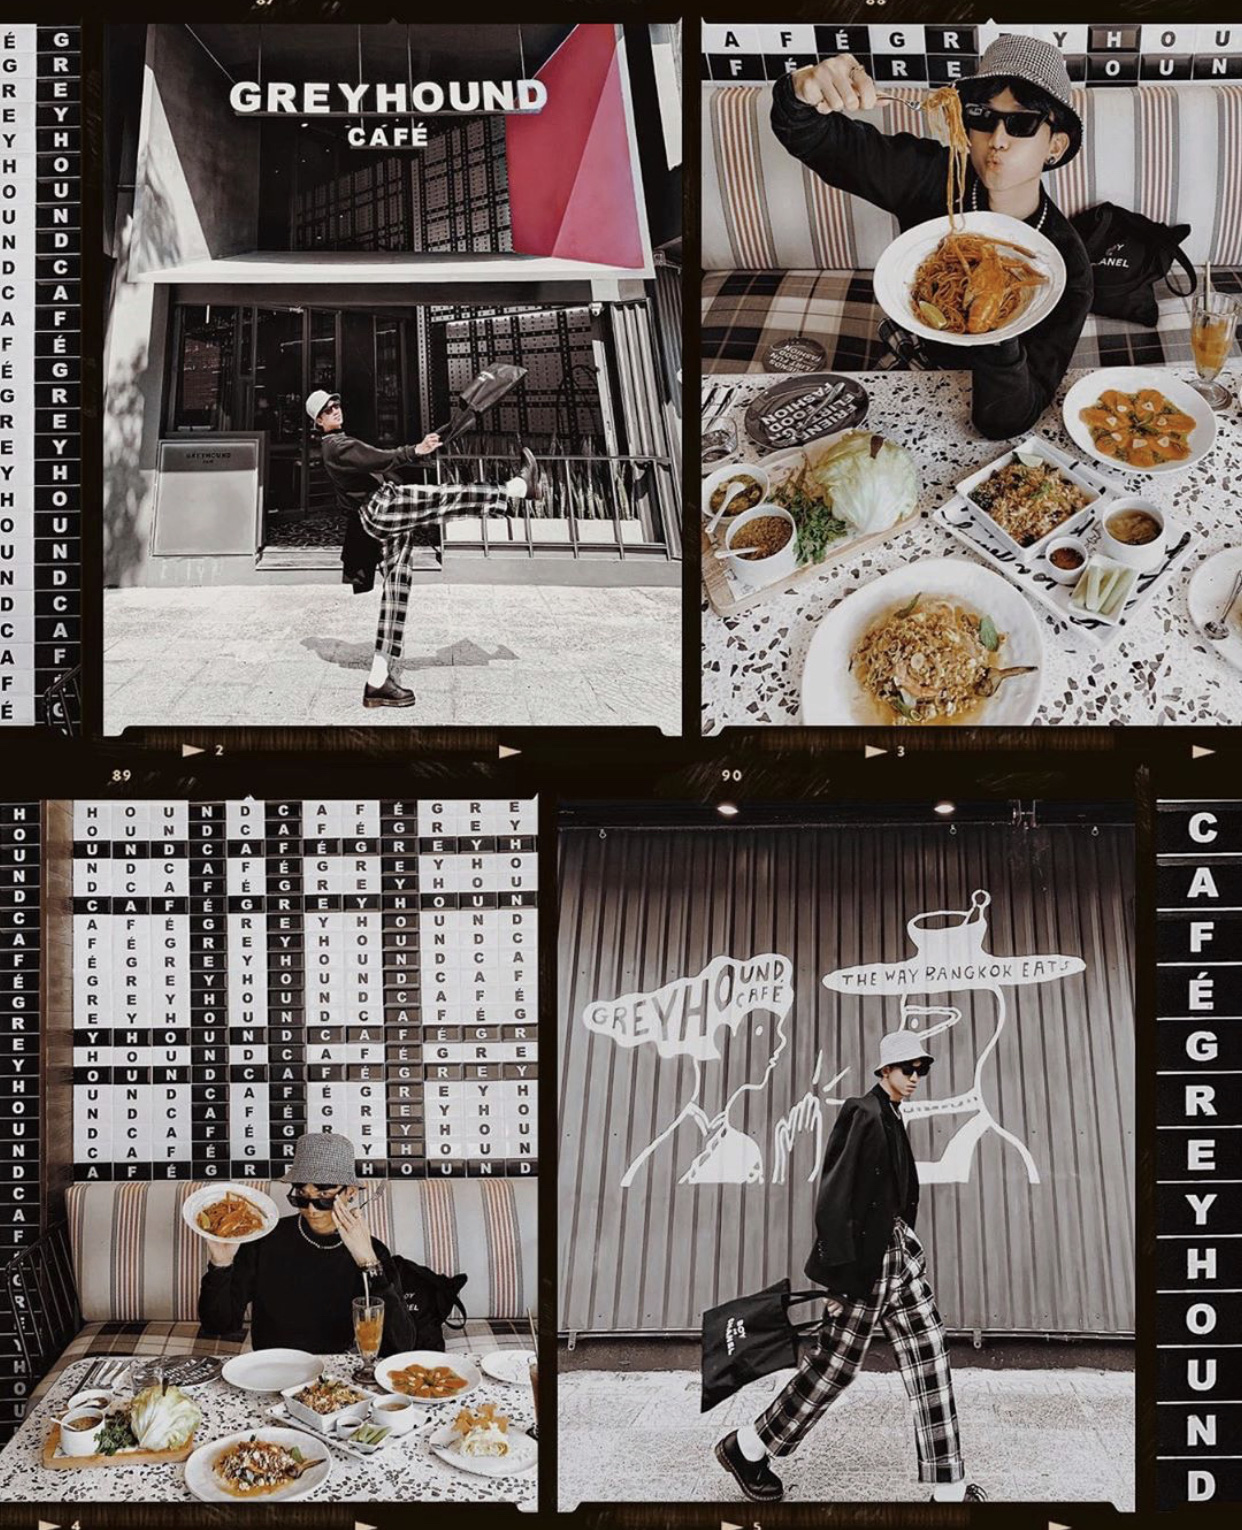 Dành cho hội Thai-aholic: Greyhound - Thương hiệu cafe kết hợp thời trang đình đám nhất xứ sở chùa vàng đã về đến Sài Gòn rồi đây! - Ảnh 3.